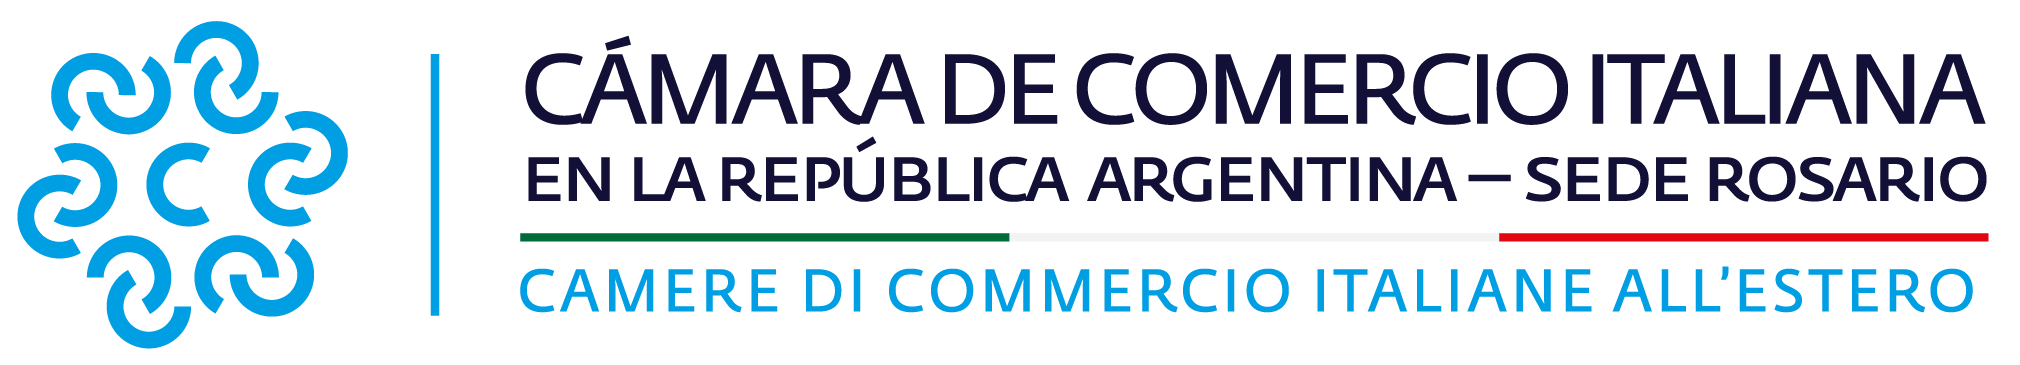 Cámara de Comercio Italiana en la Republica Argentina - Sede Rosario